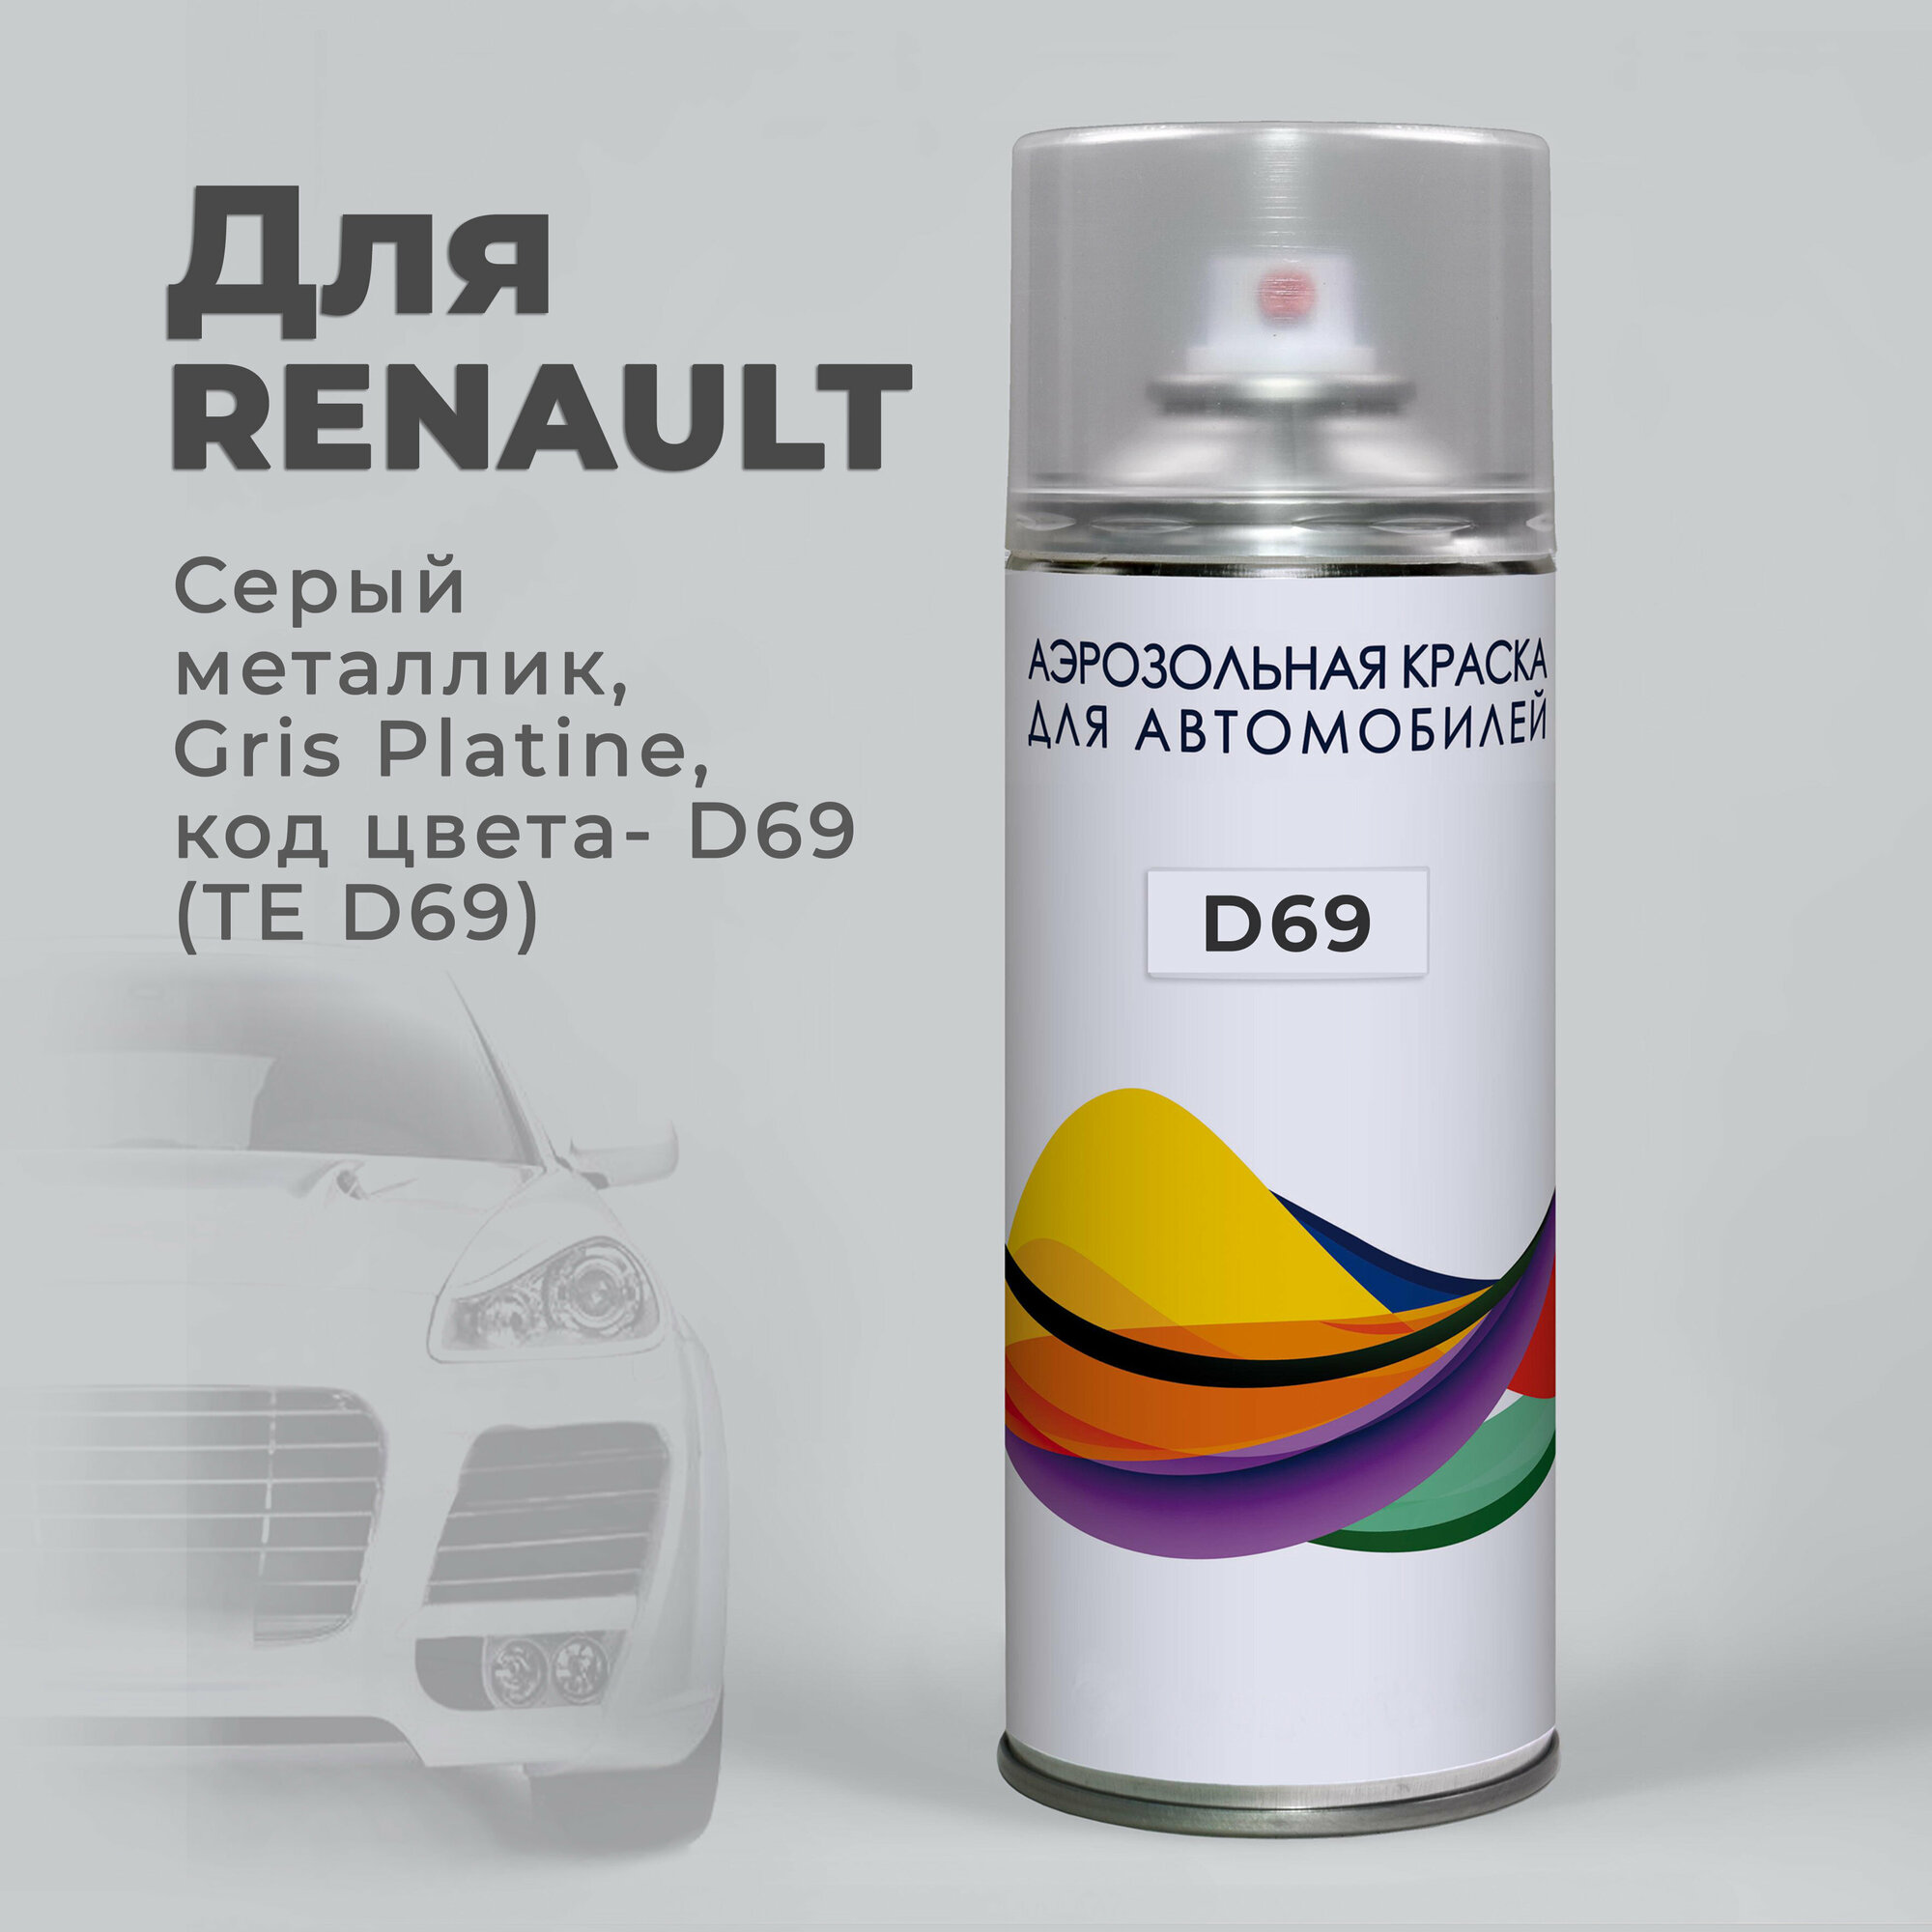 Краска-спрей аэрозоль для авто по коду D69 (TE D69) Renault Серый металлик Gris Platine. Аэрозольный баллон